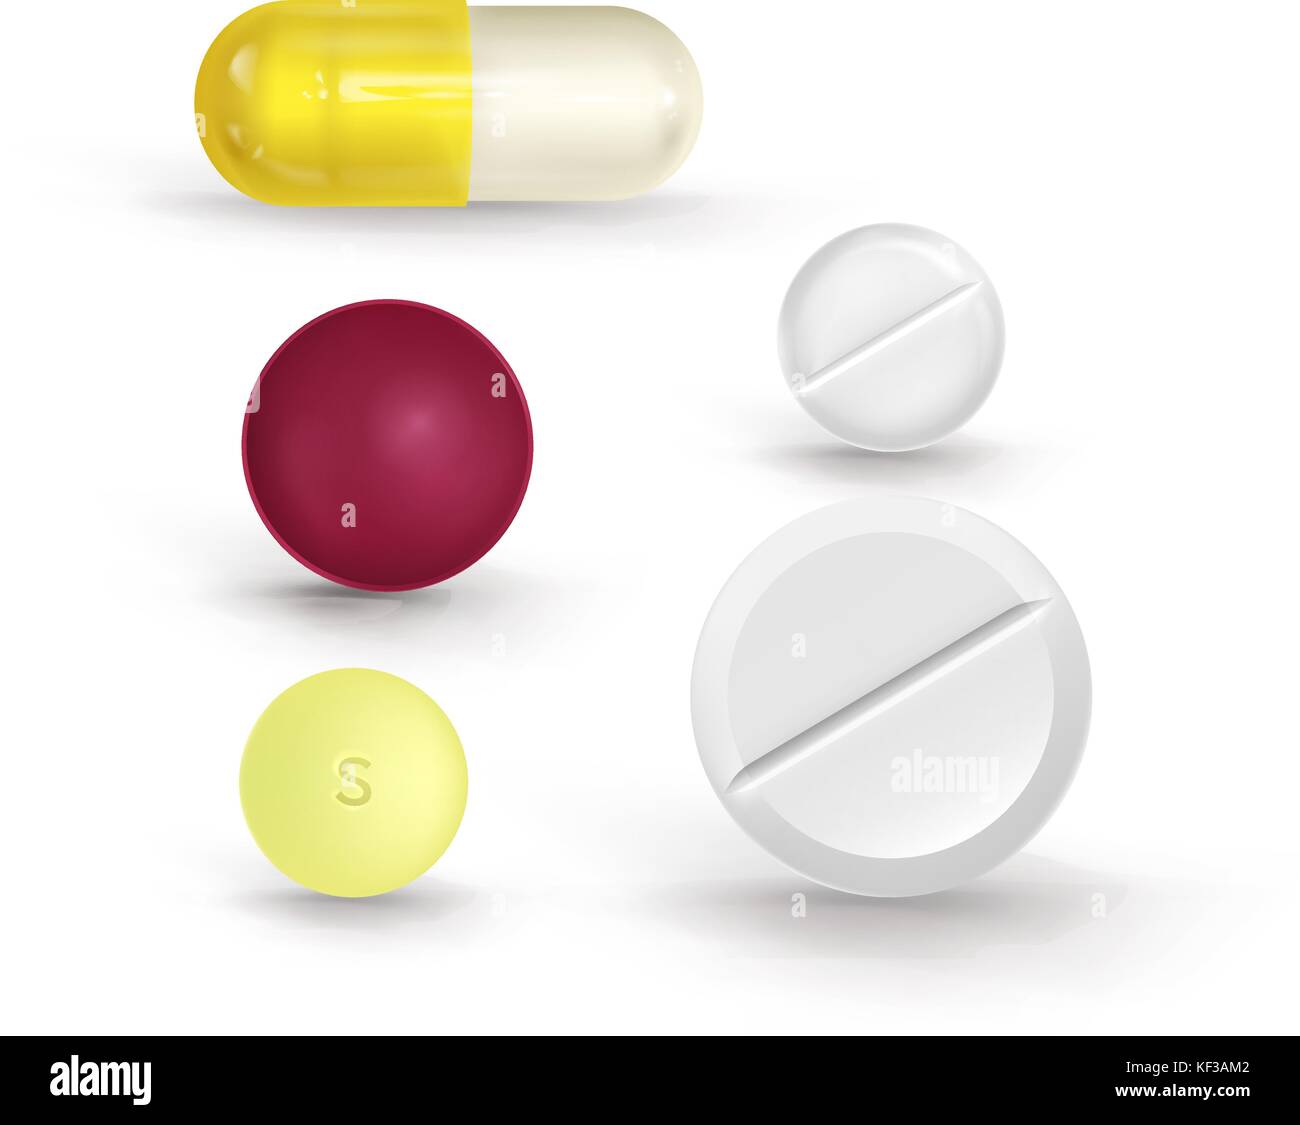 Eine Reihe von bunten Tabletten in verschiedenen Formen auf einem weißen Hintergrund. Kann für medizinische Websites verwendet werden. Wunderschöne realistische Vector Illustration Stock Vektor